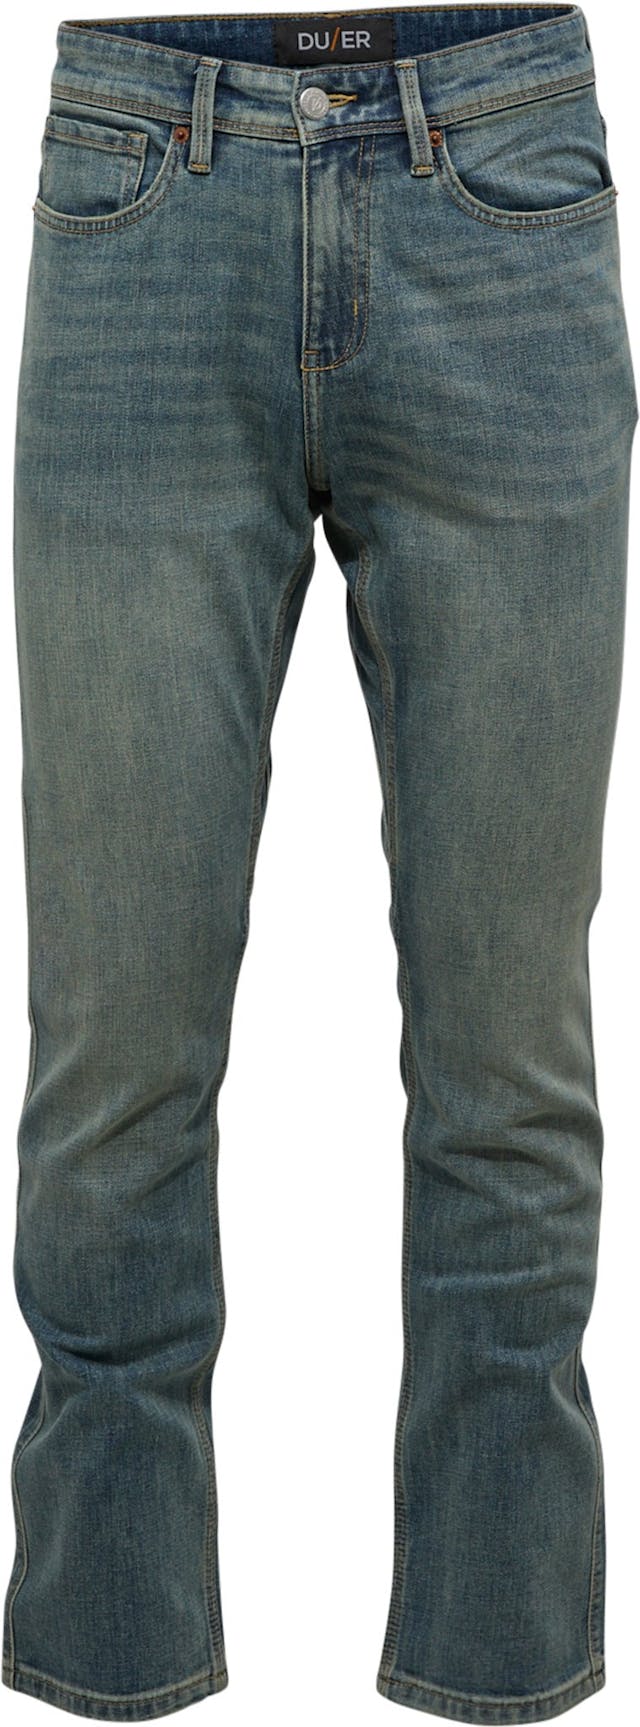 Image de produit pour Jeans jambe droite Performance - Homme